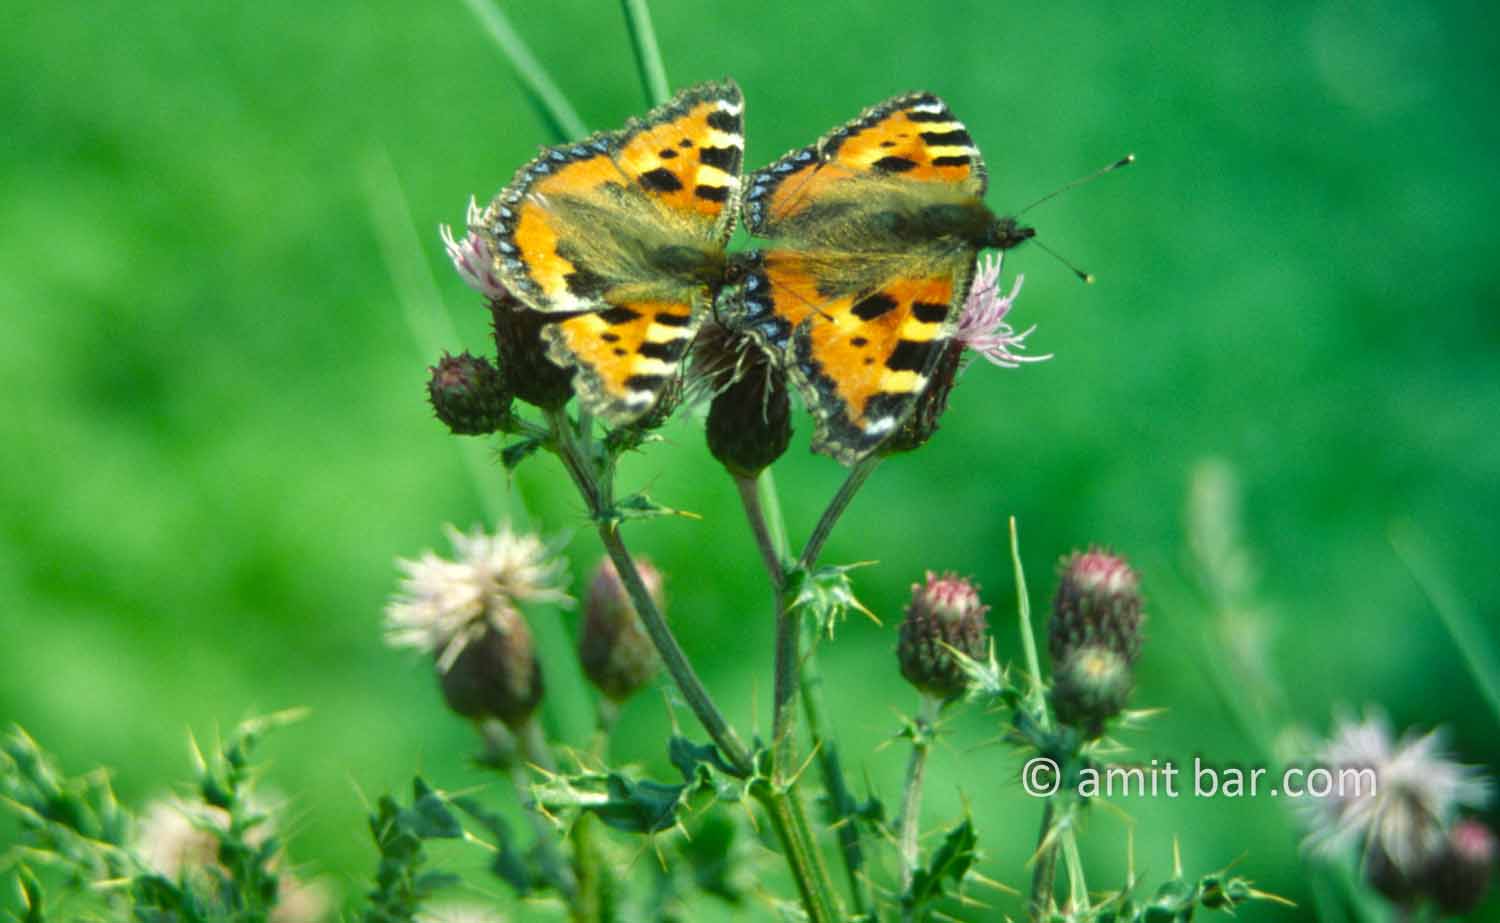 Mating butterflies: Mating Atalanta butterflies